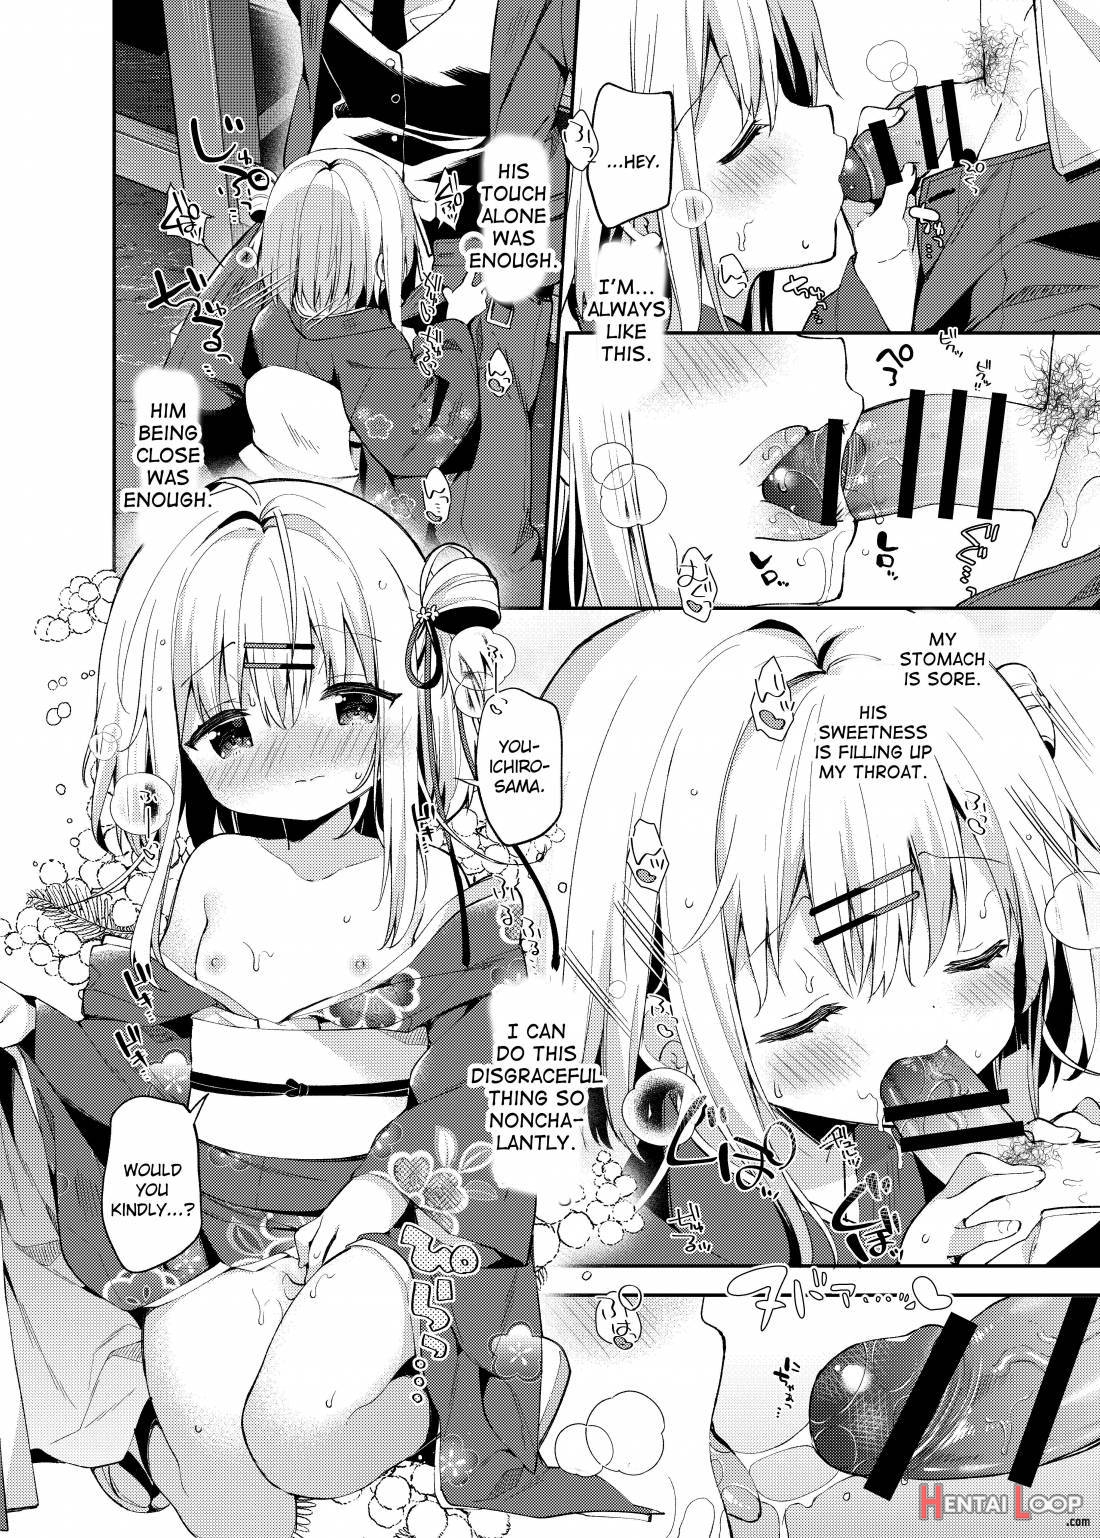 Onnanoko no Mayu 3 -Vita Sexualis- page 11